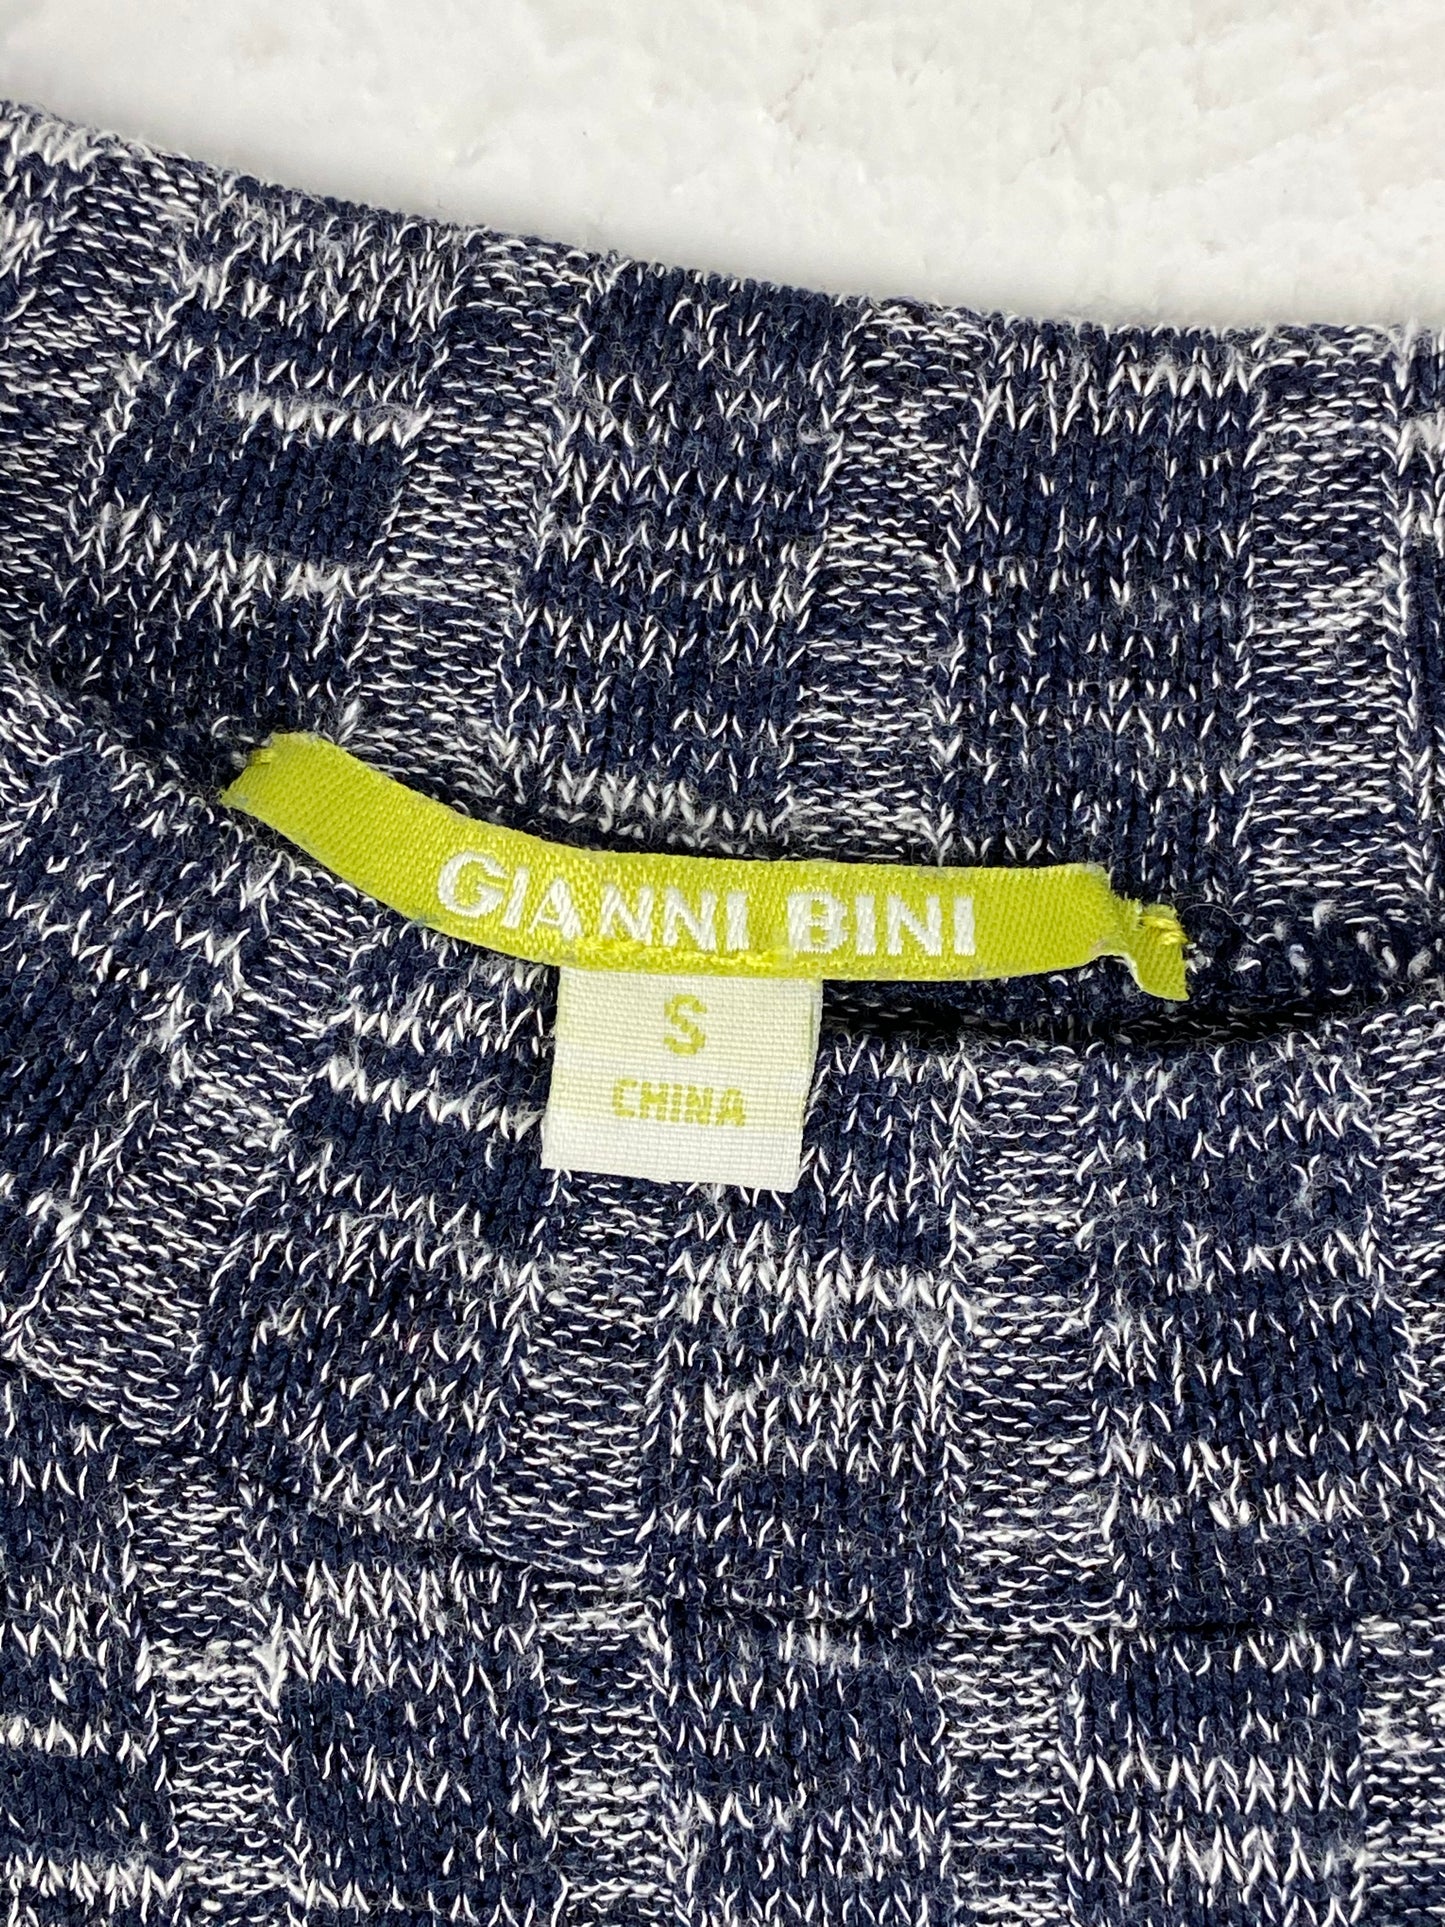 Giani Bini Tight Knit Bodycon Dress